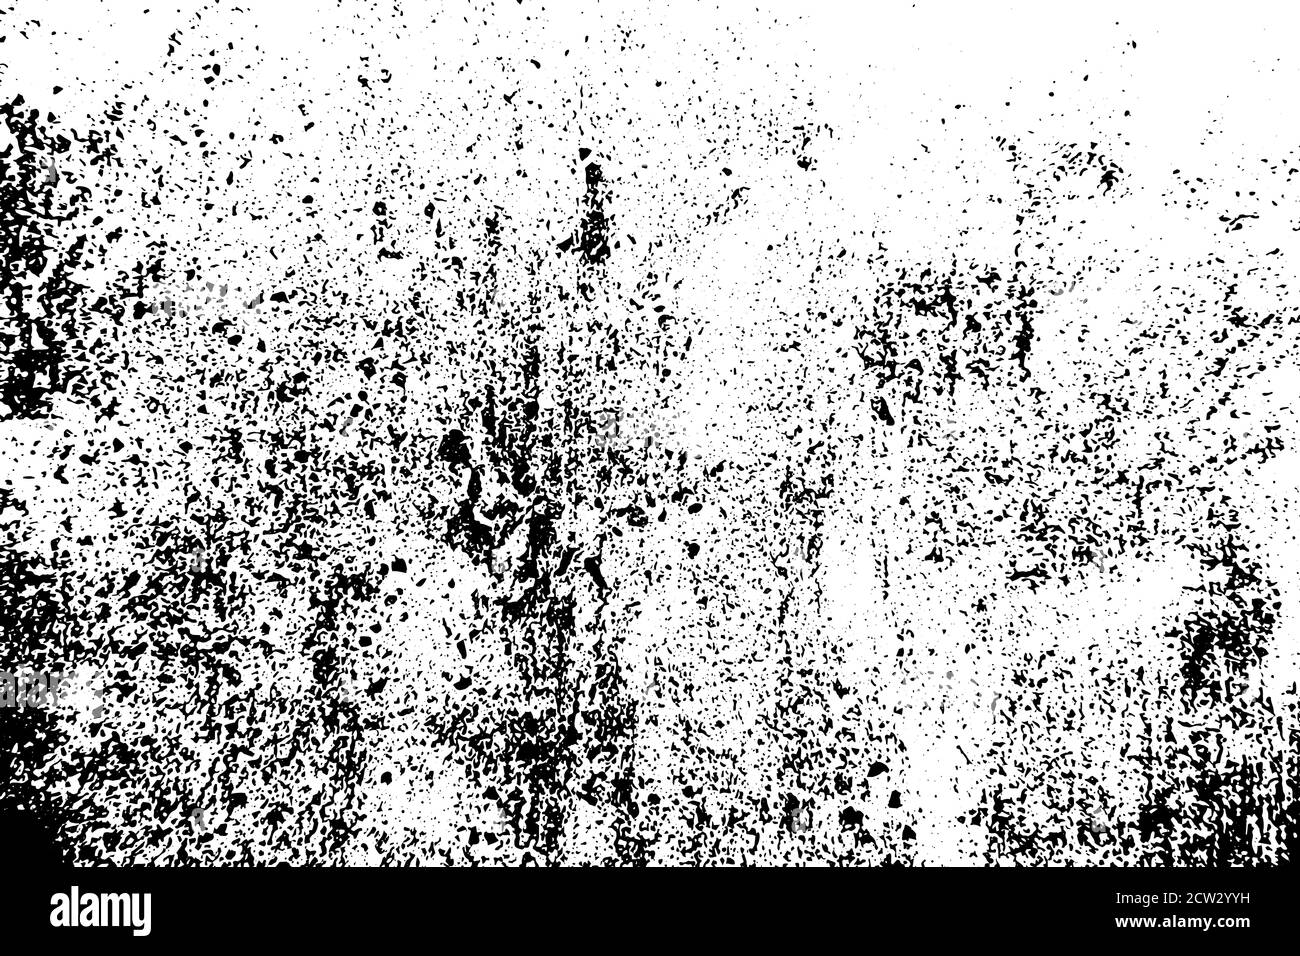 Splash Vektor Nahtloses Muster. Schwarz und Weiß handgezeichnete Spray Textur. Schwarze Punkte auf weißem Hintergrund Stock Vektor